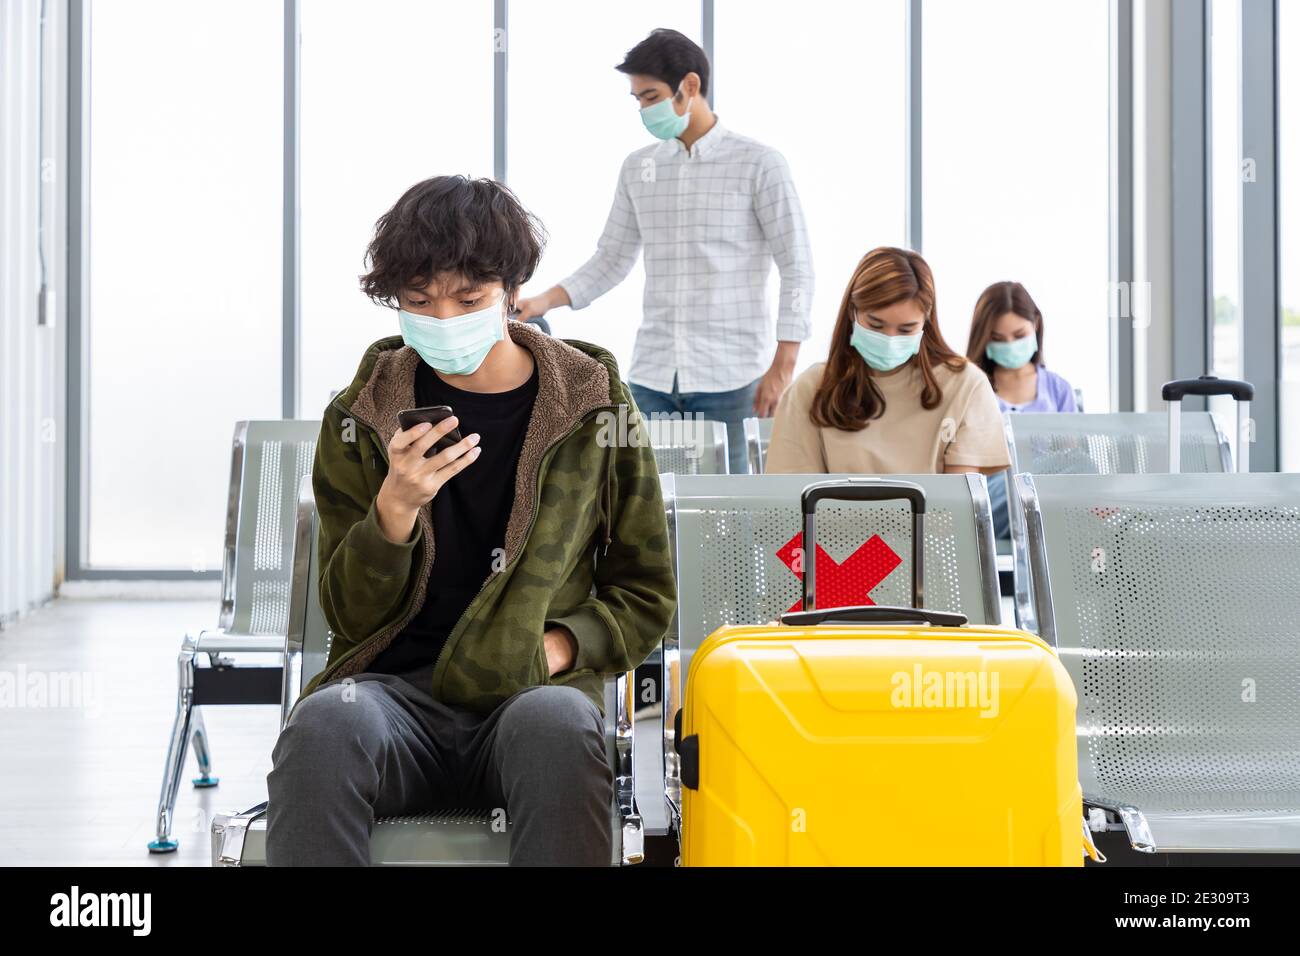 Viaggiatori che indossano maschera protettiva in aeroporto internazionale, durante la pandemia Covid-19, sicurezza con protocollo di distanza sociale, nuovo normale viaggio concep Foto Stock